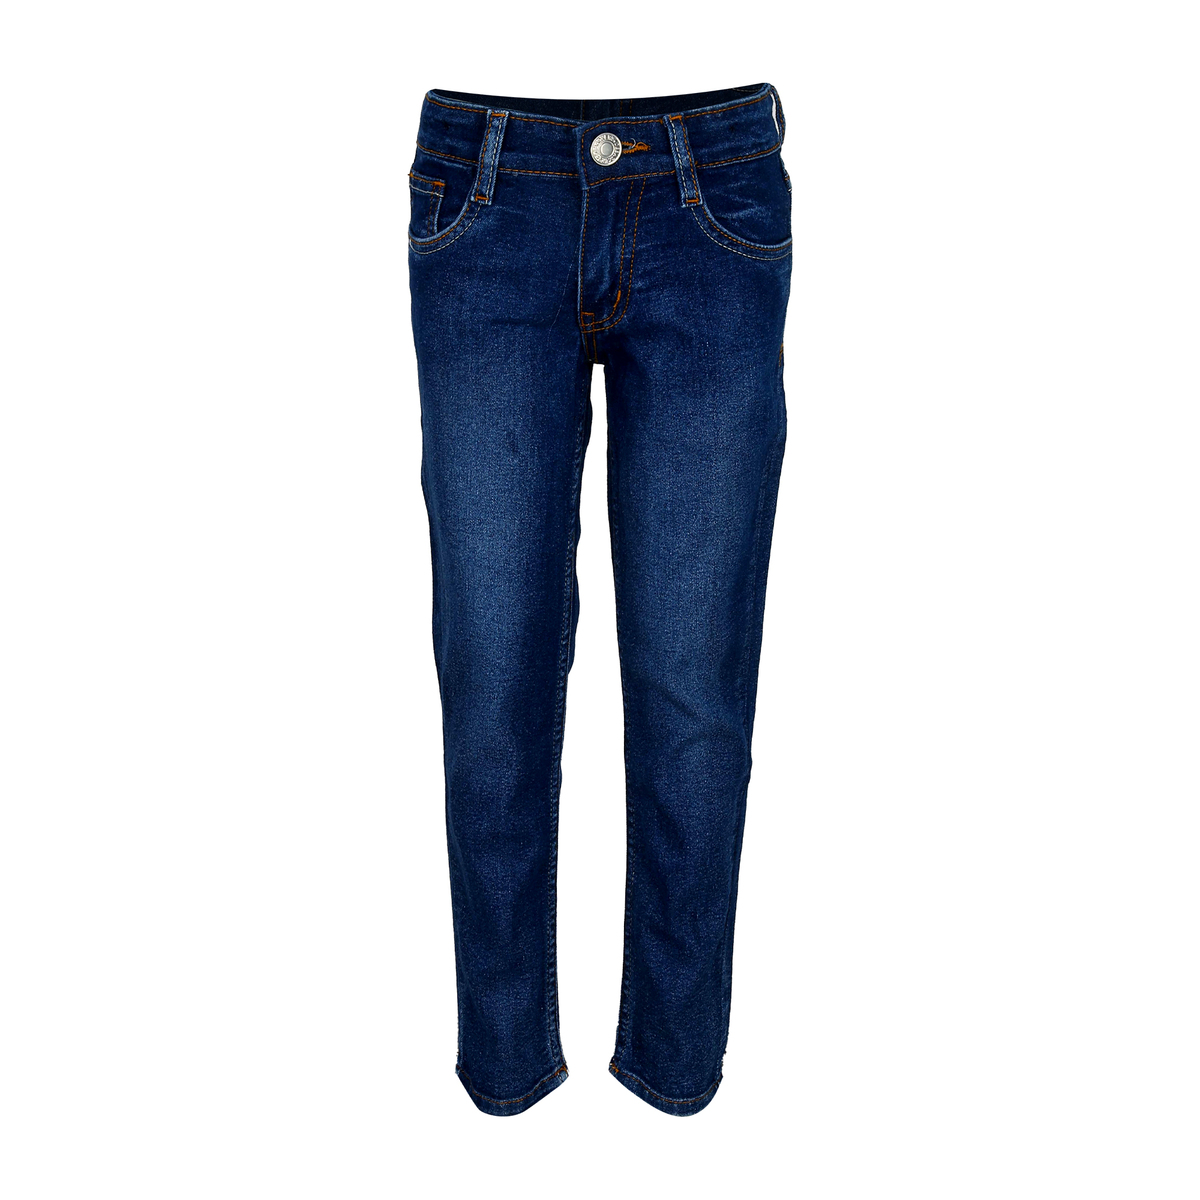 Debackers Boys Jeans KBS-28017-Blue 3-4Y Online at Best Price | Jeans ...